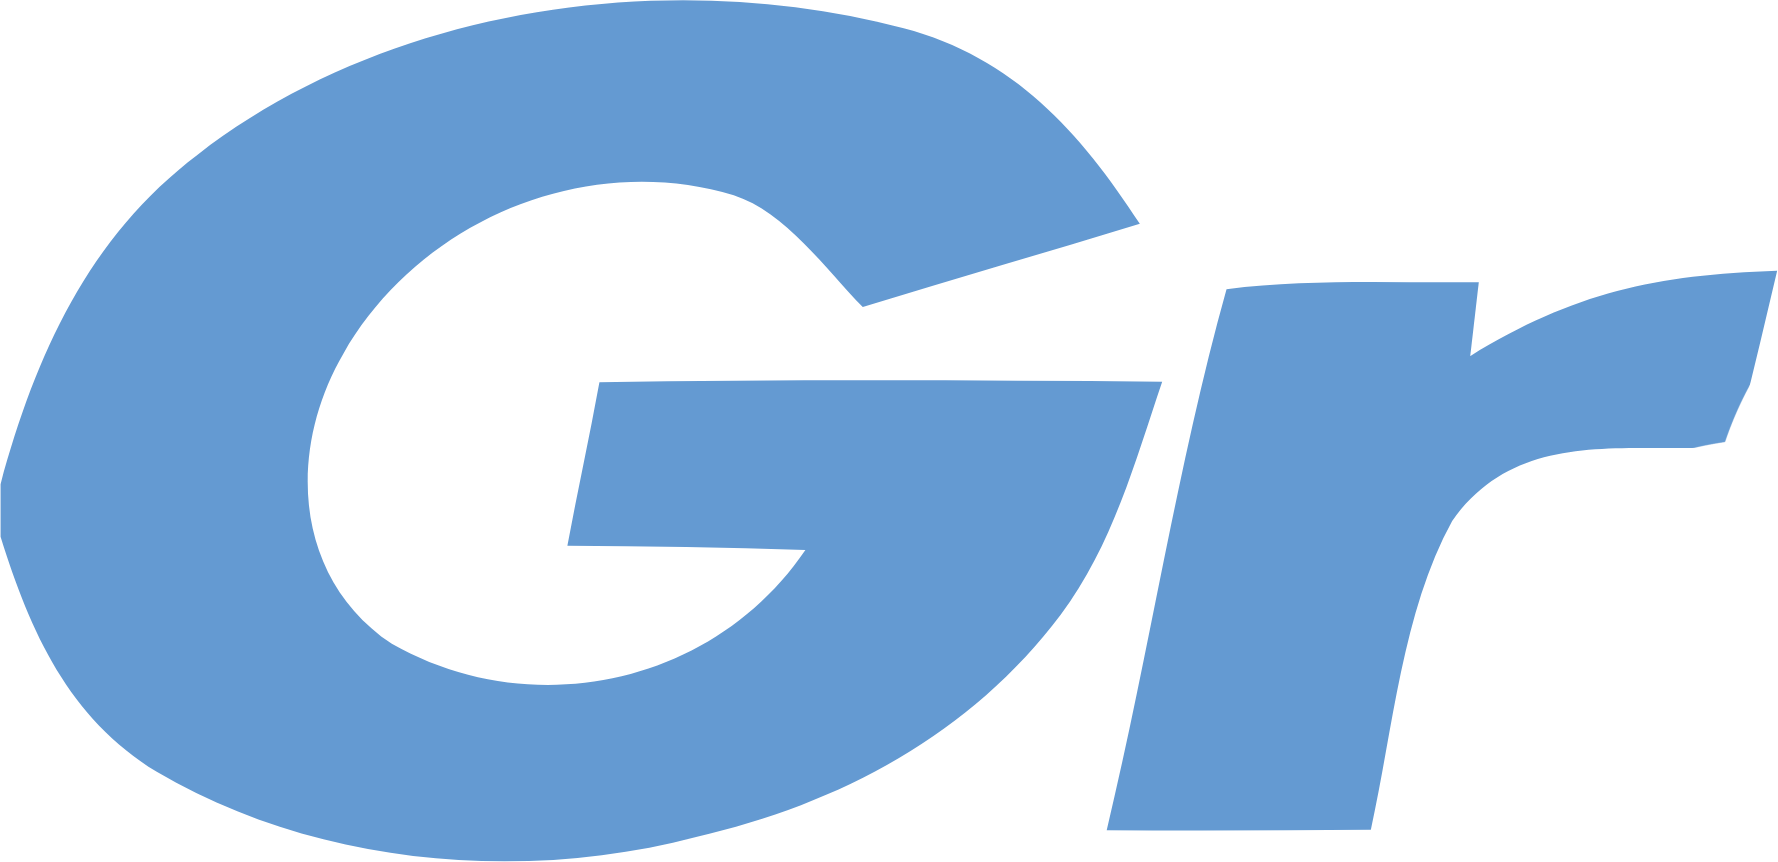 Grendene logo (PNG transparent)